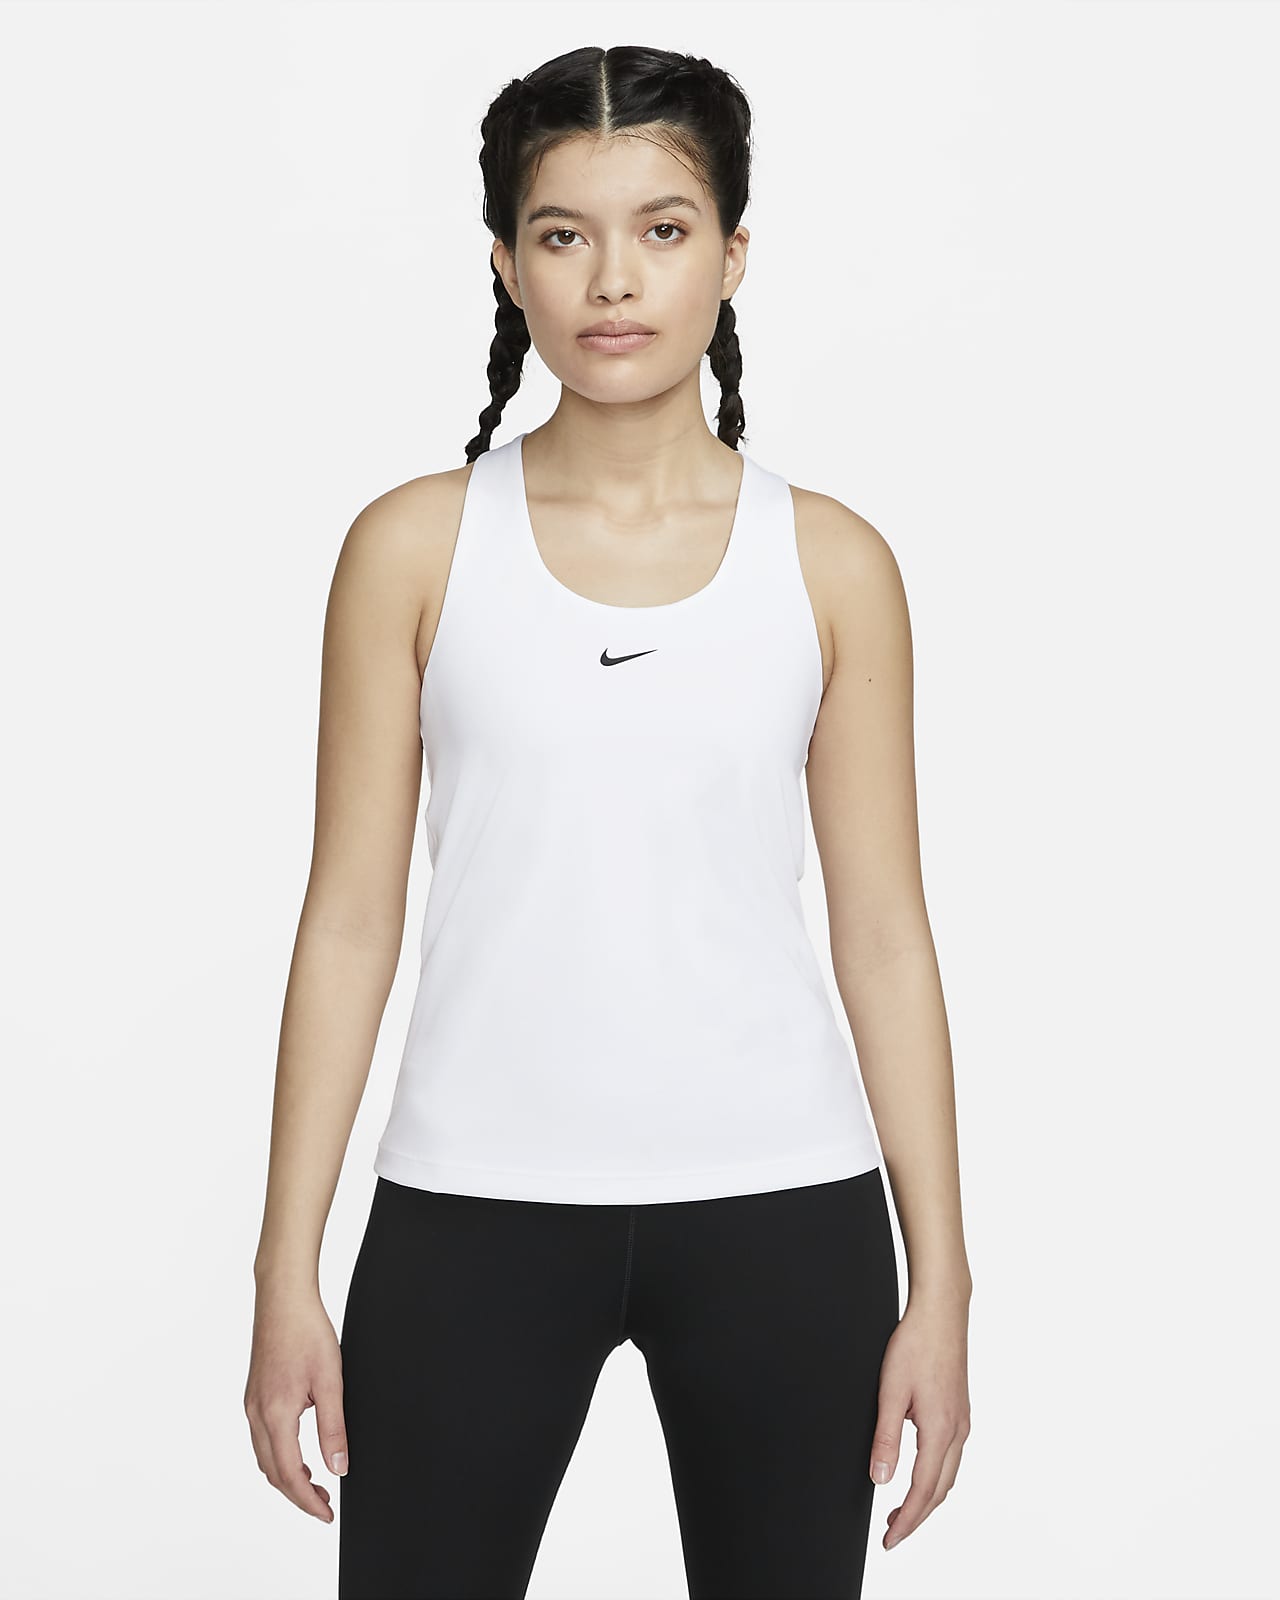 เสื้อกล้ามสปอร์ตบราผู้หญิงซัพพอร์ตระดับกลางเสริมฟองน้ำ Nike Swoosh